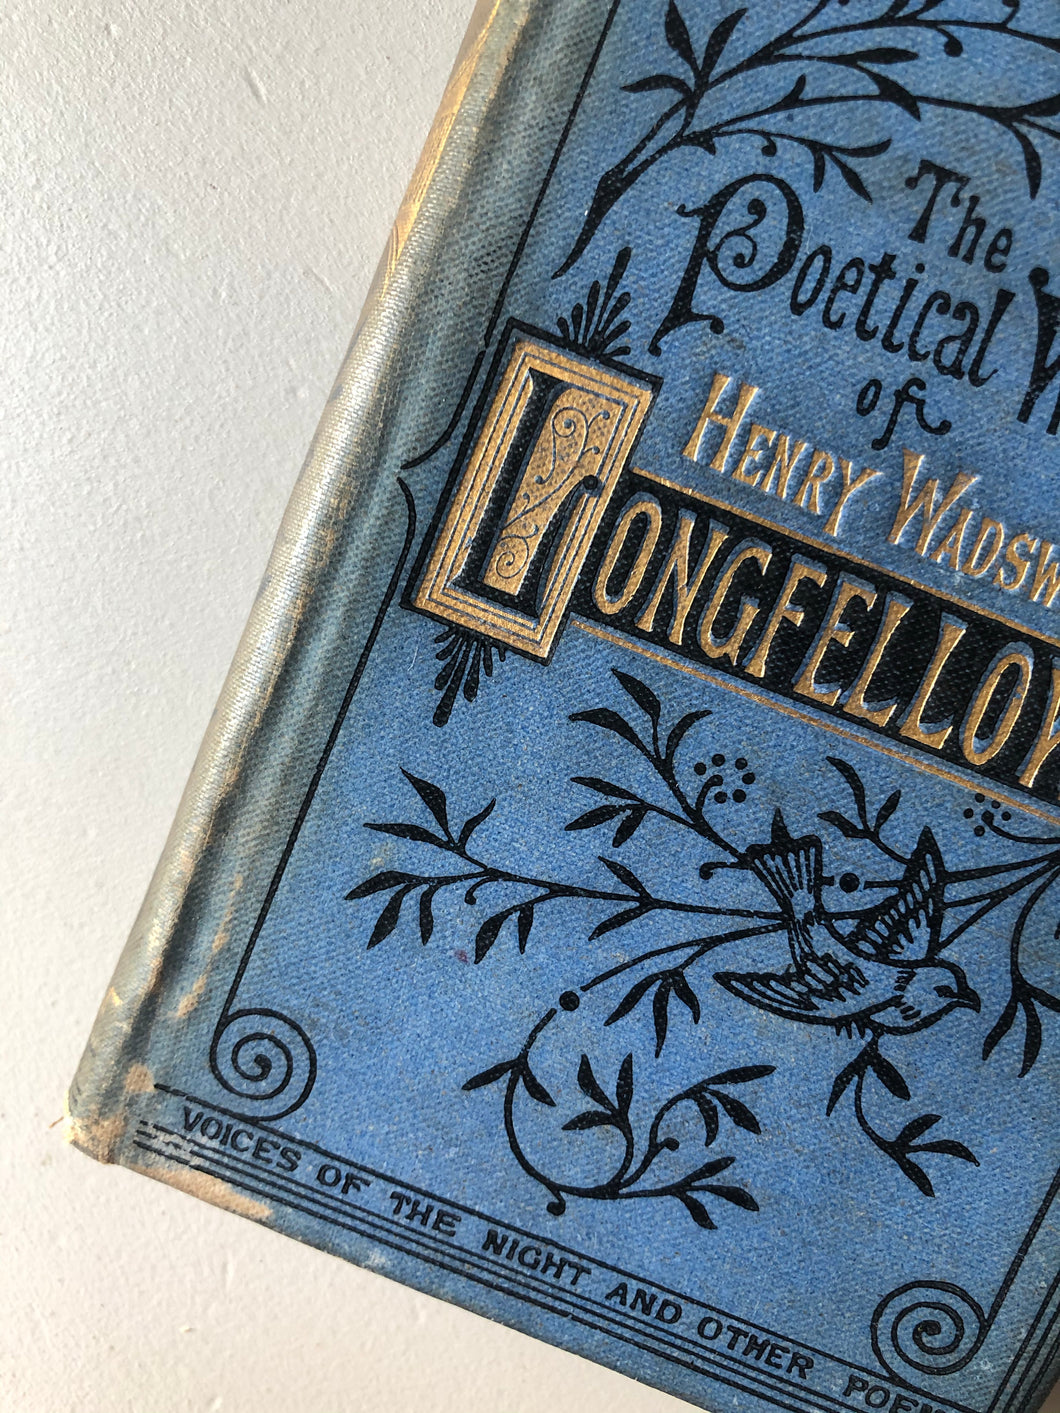 Antique ‘Longfellow’ poetry book